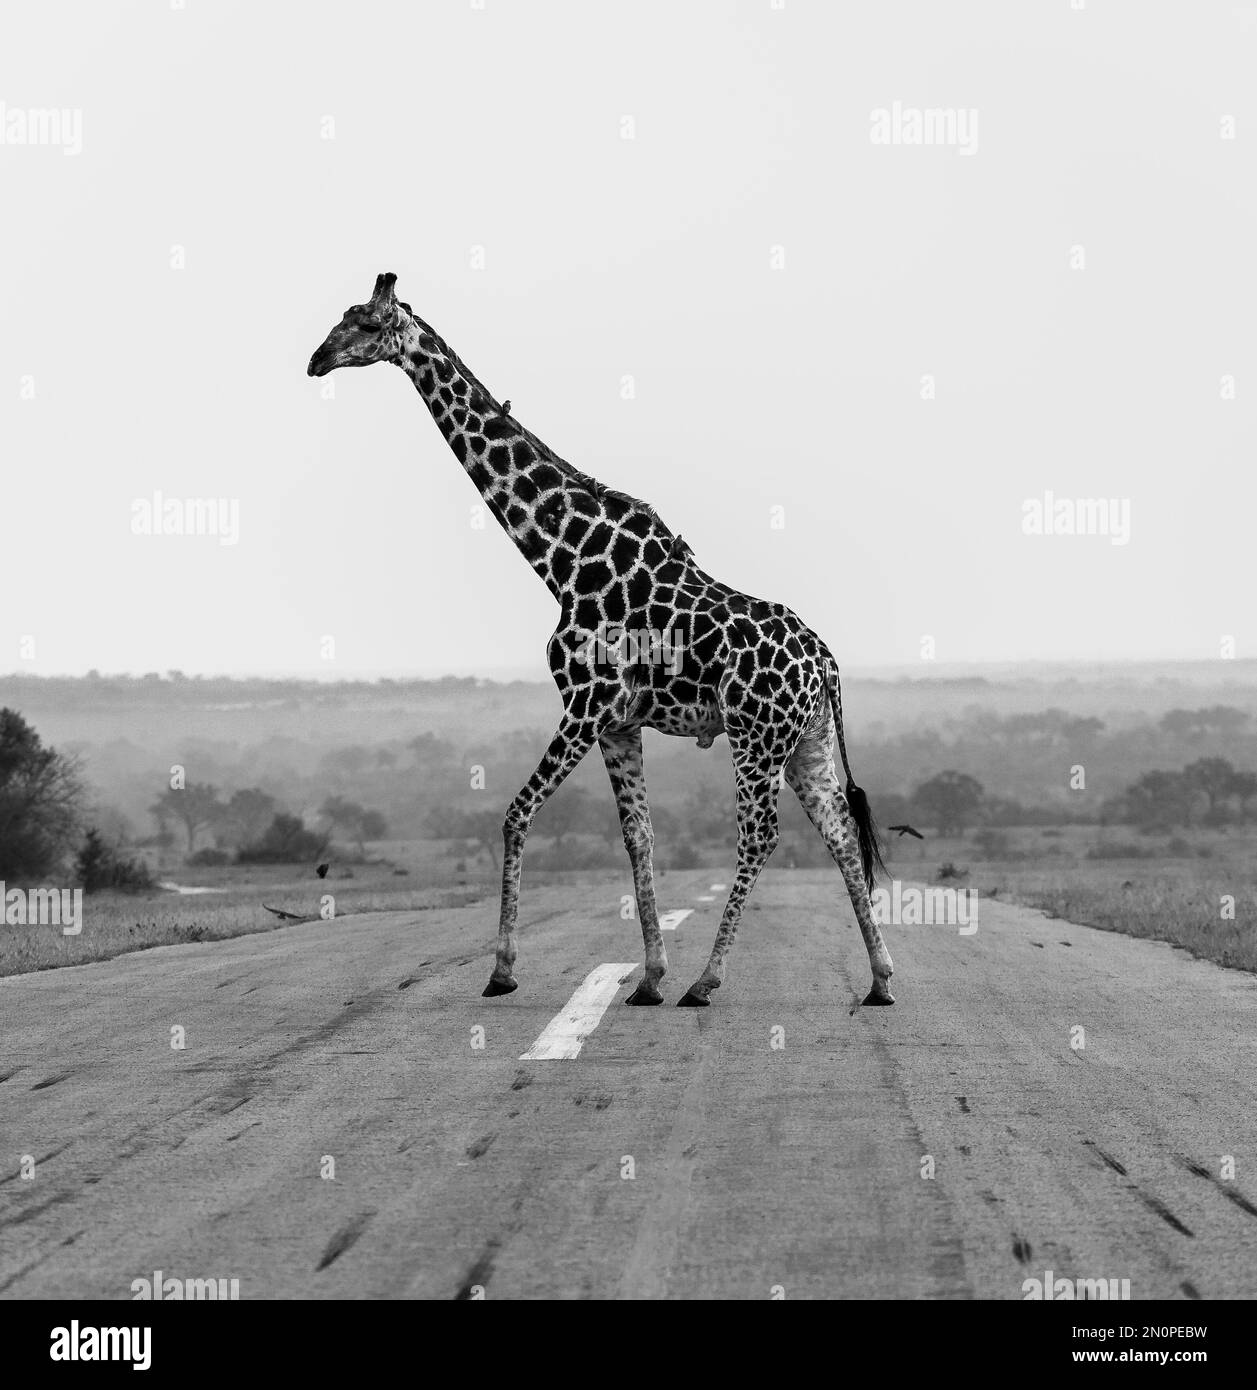 Una jirafa, Giraffa, camina por un camino, en blanco y negro. Foto de stock